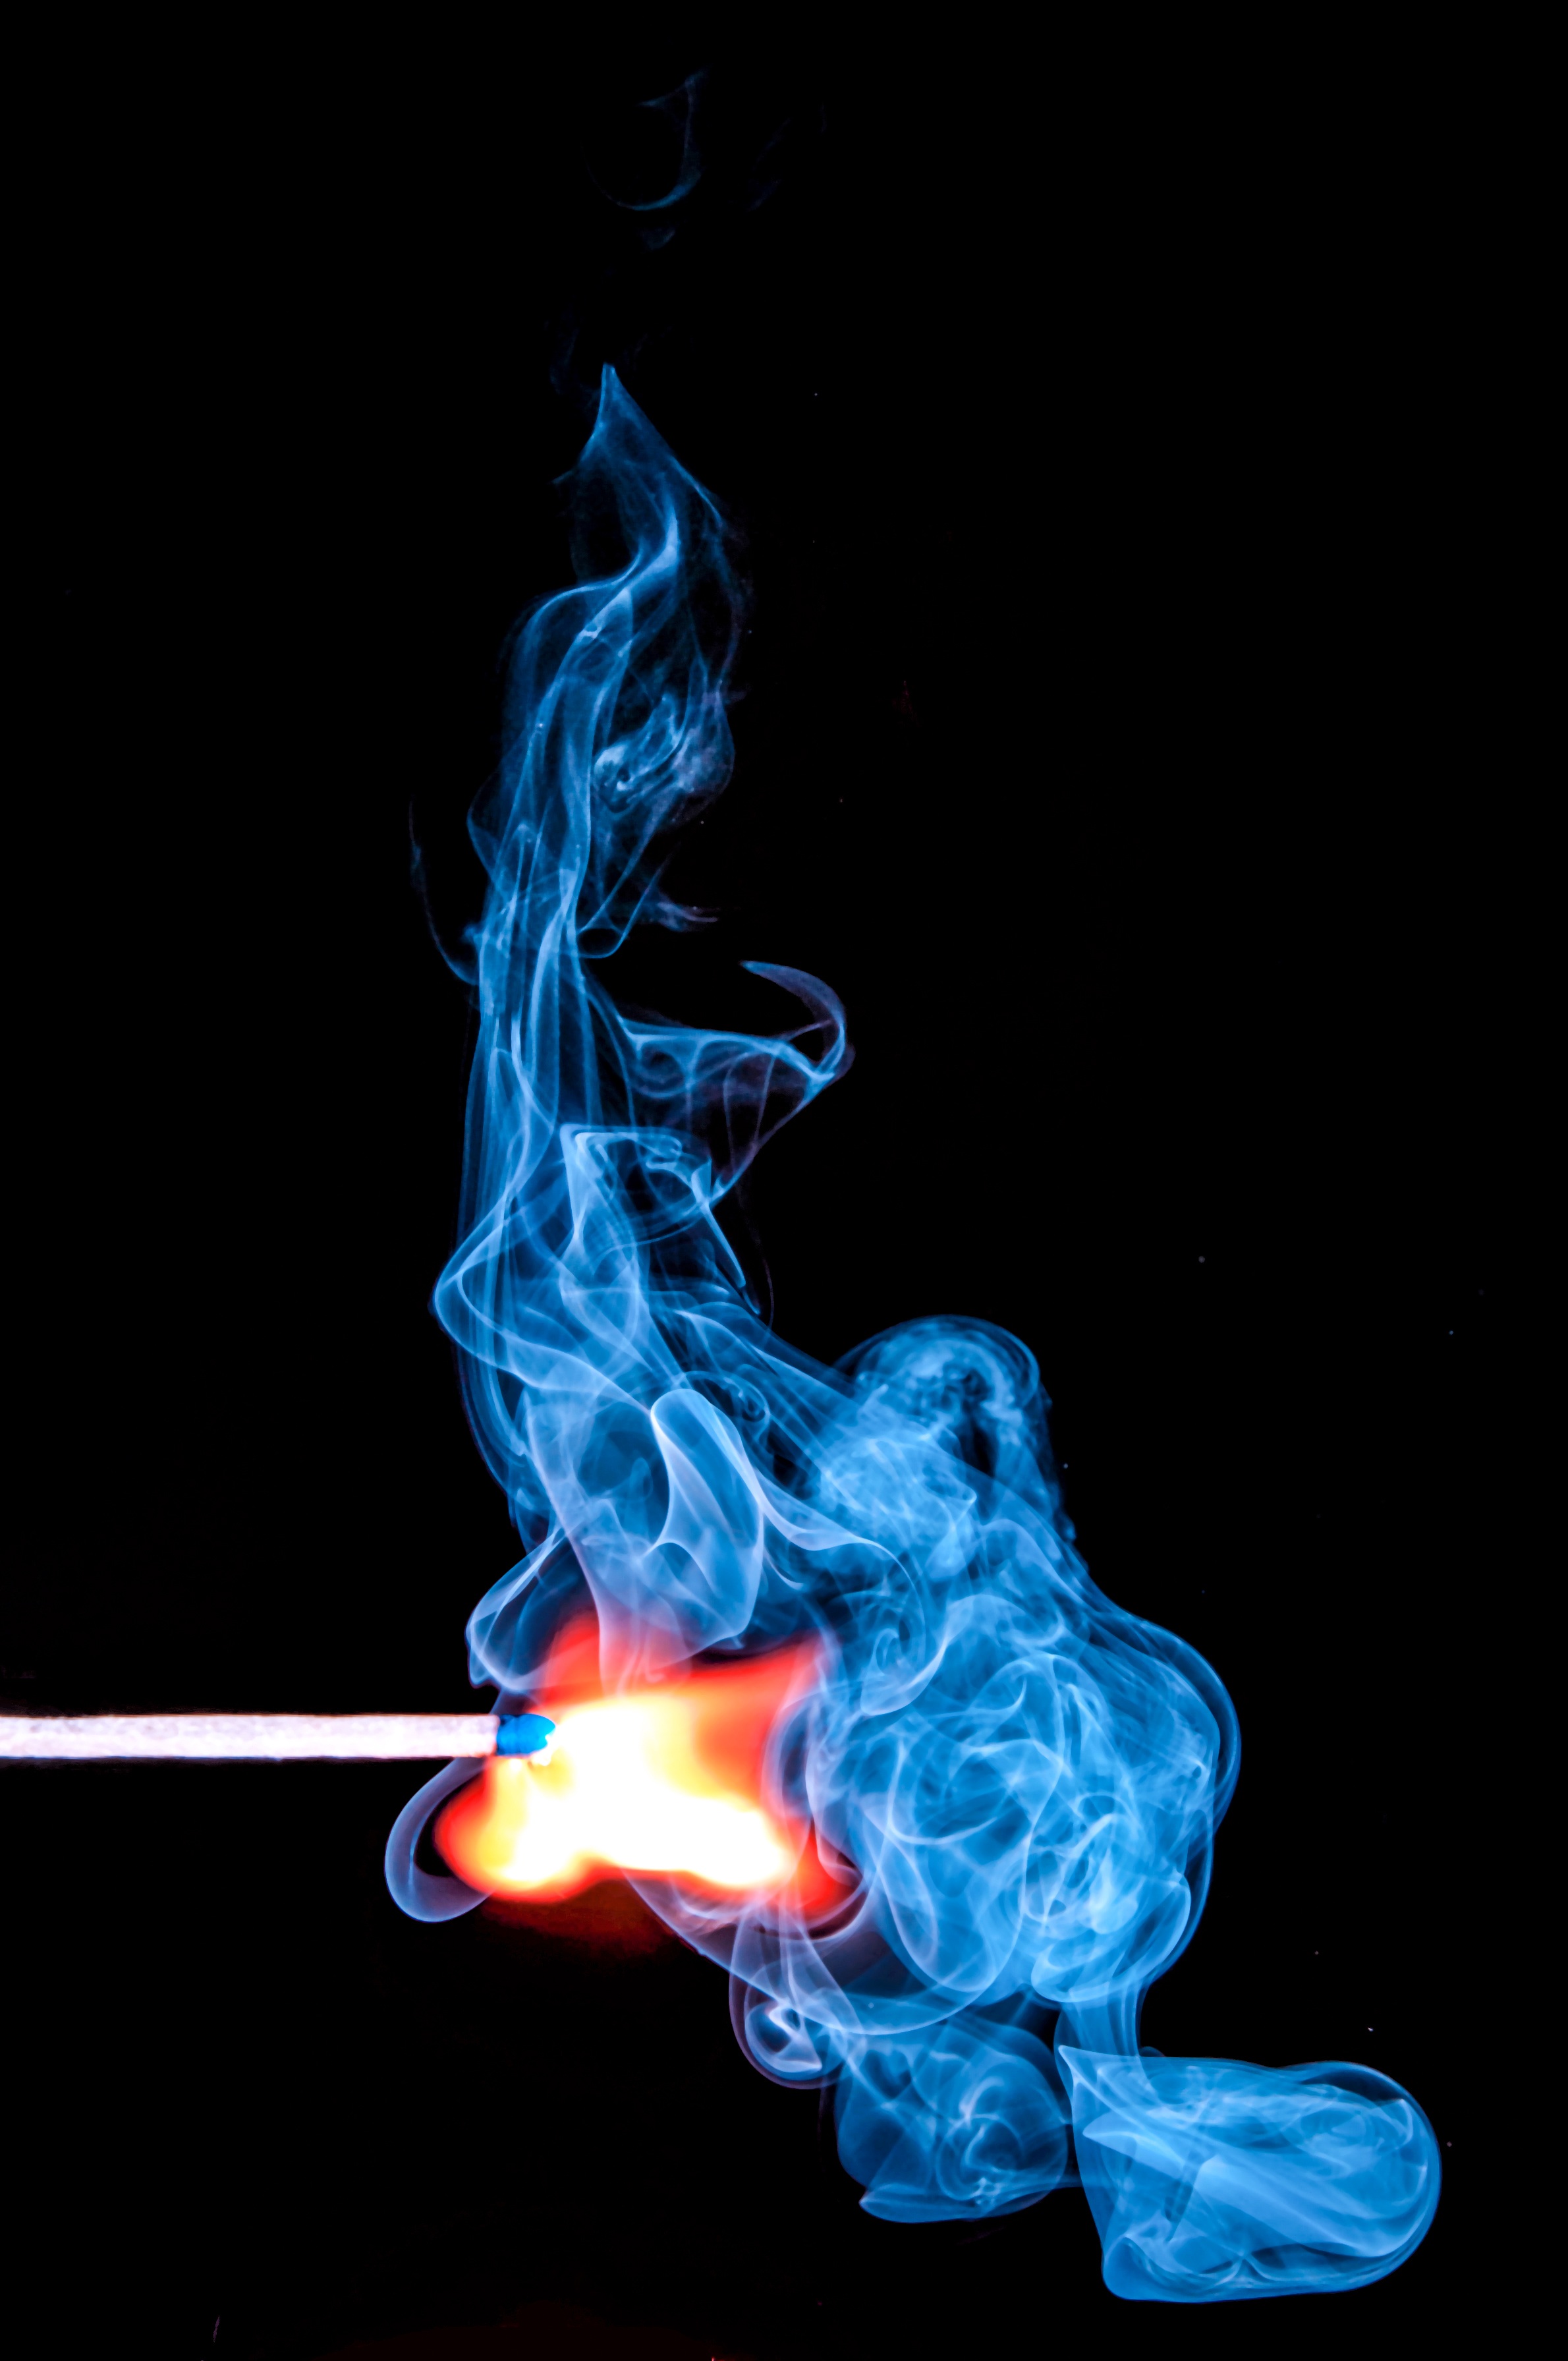 smoke, fire, miscellanea, miscellaneous, match, clots Free Stock Photo